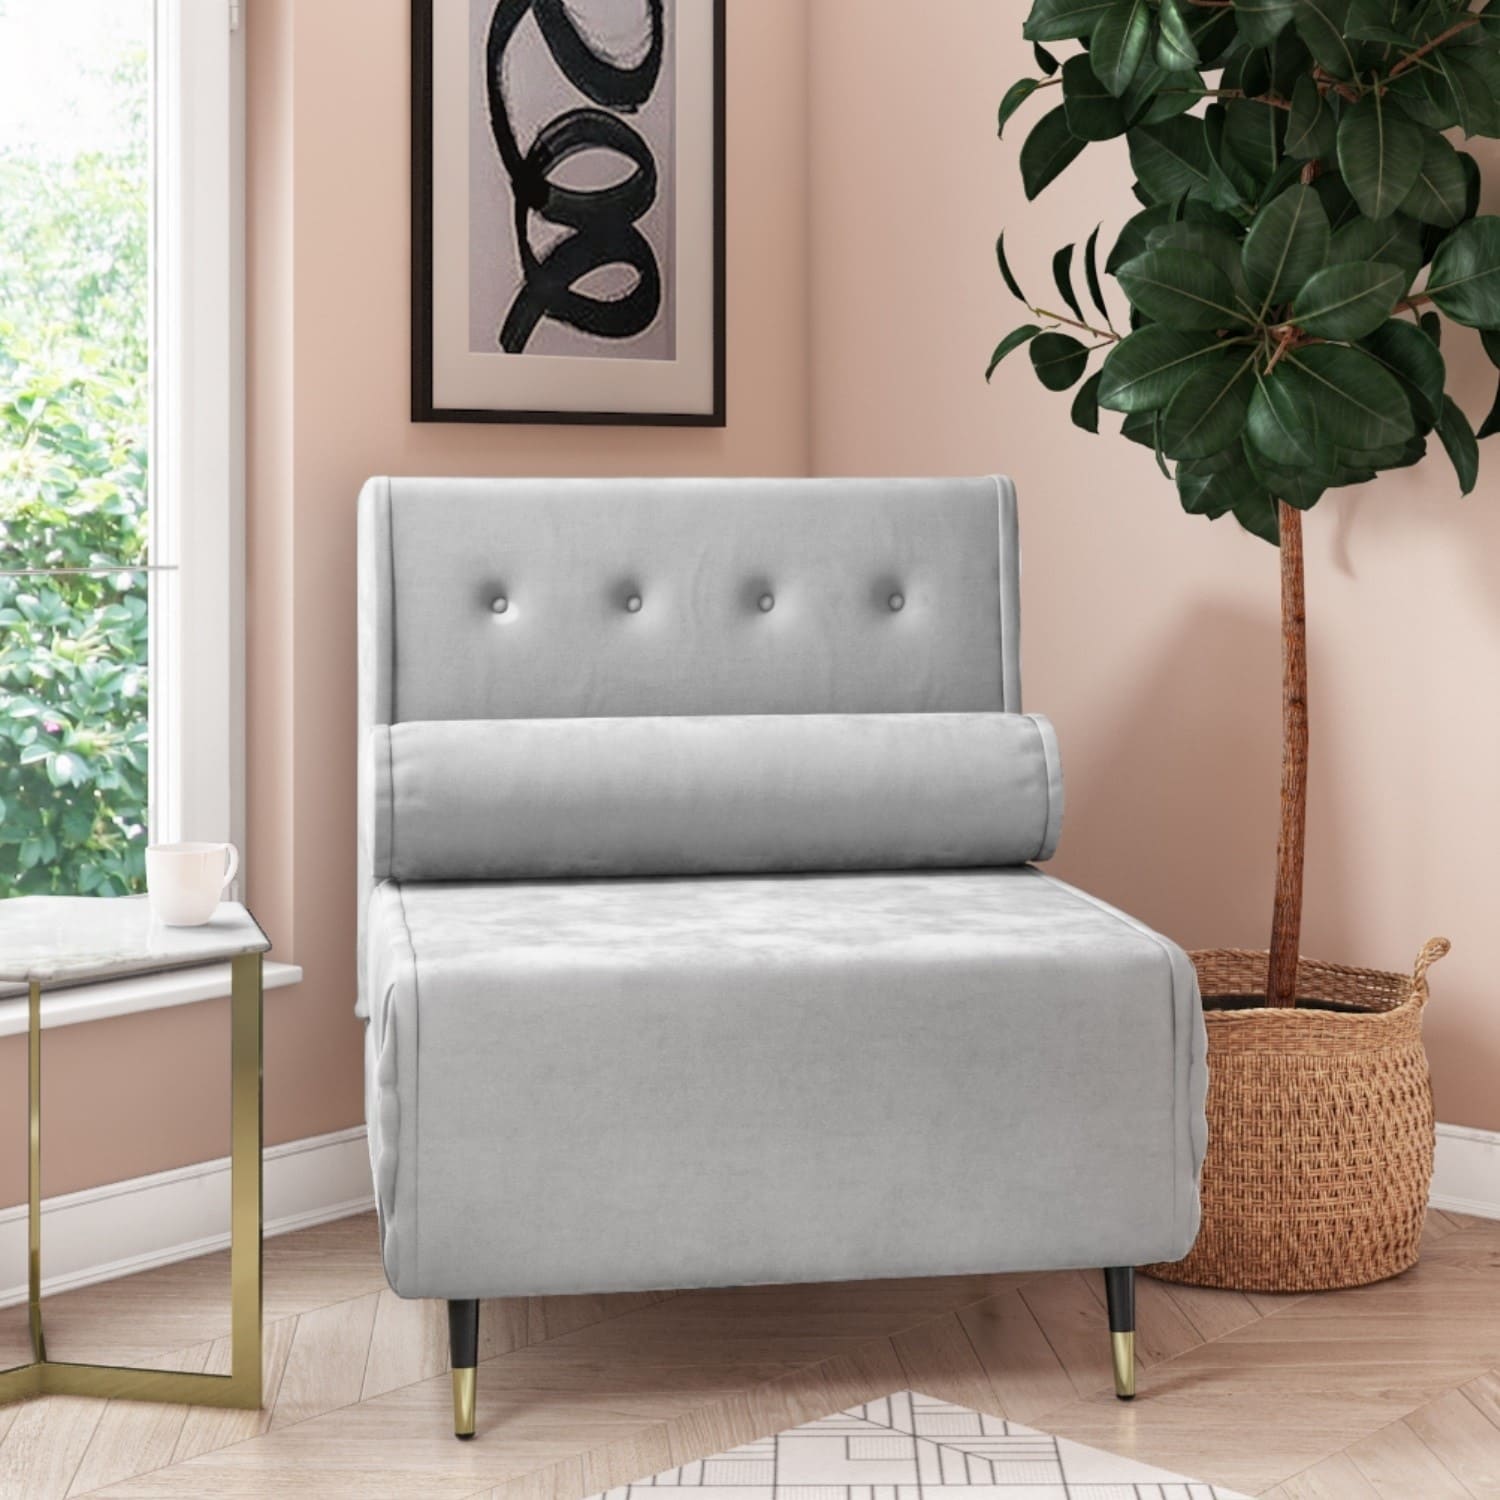 mẫu ghế sofa đơn giản hiện đại